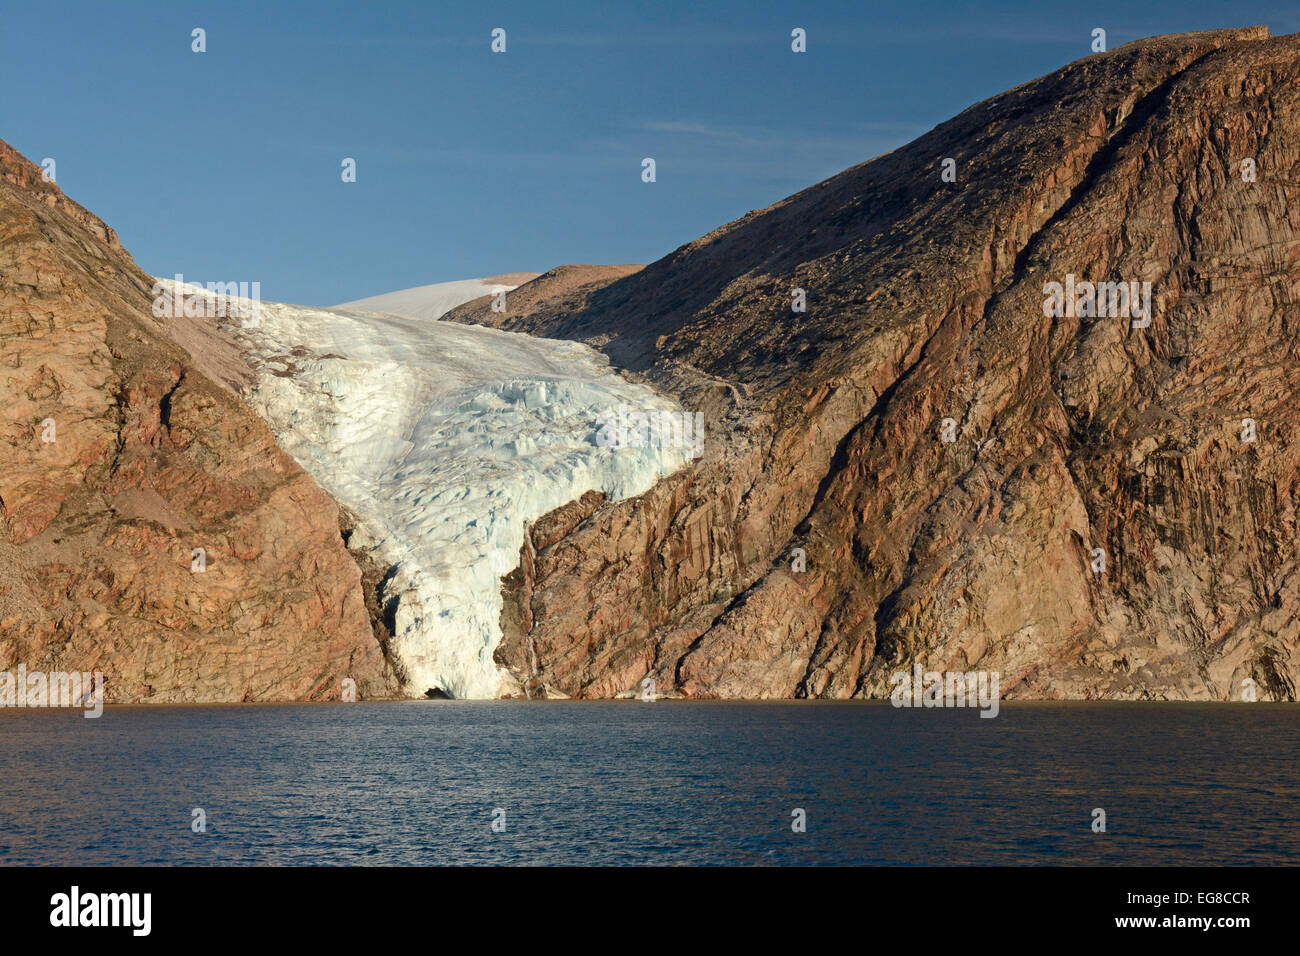 L'île de Baffin, Nunavut, Canada, des glaciers qui se jettent dans la mer, Août Banque D'Images